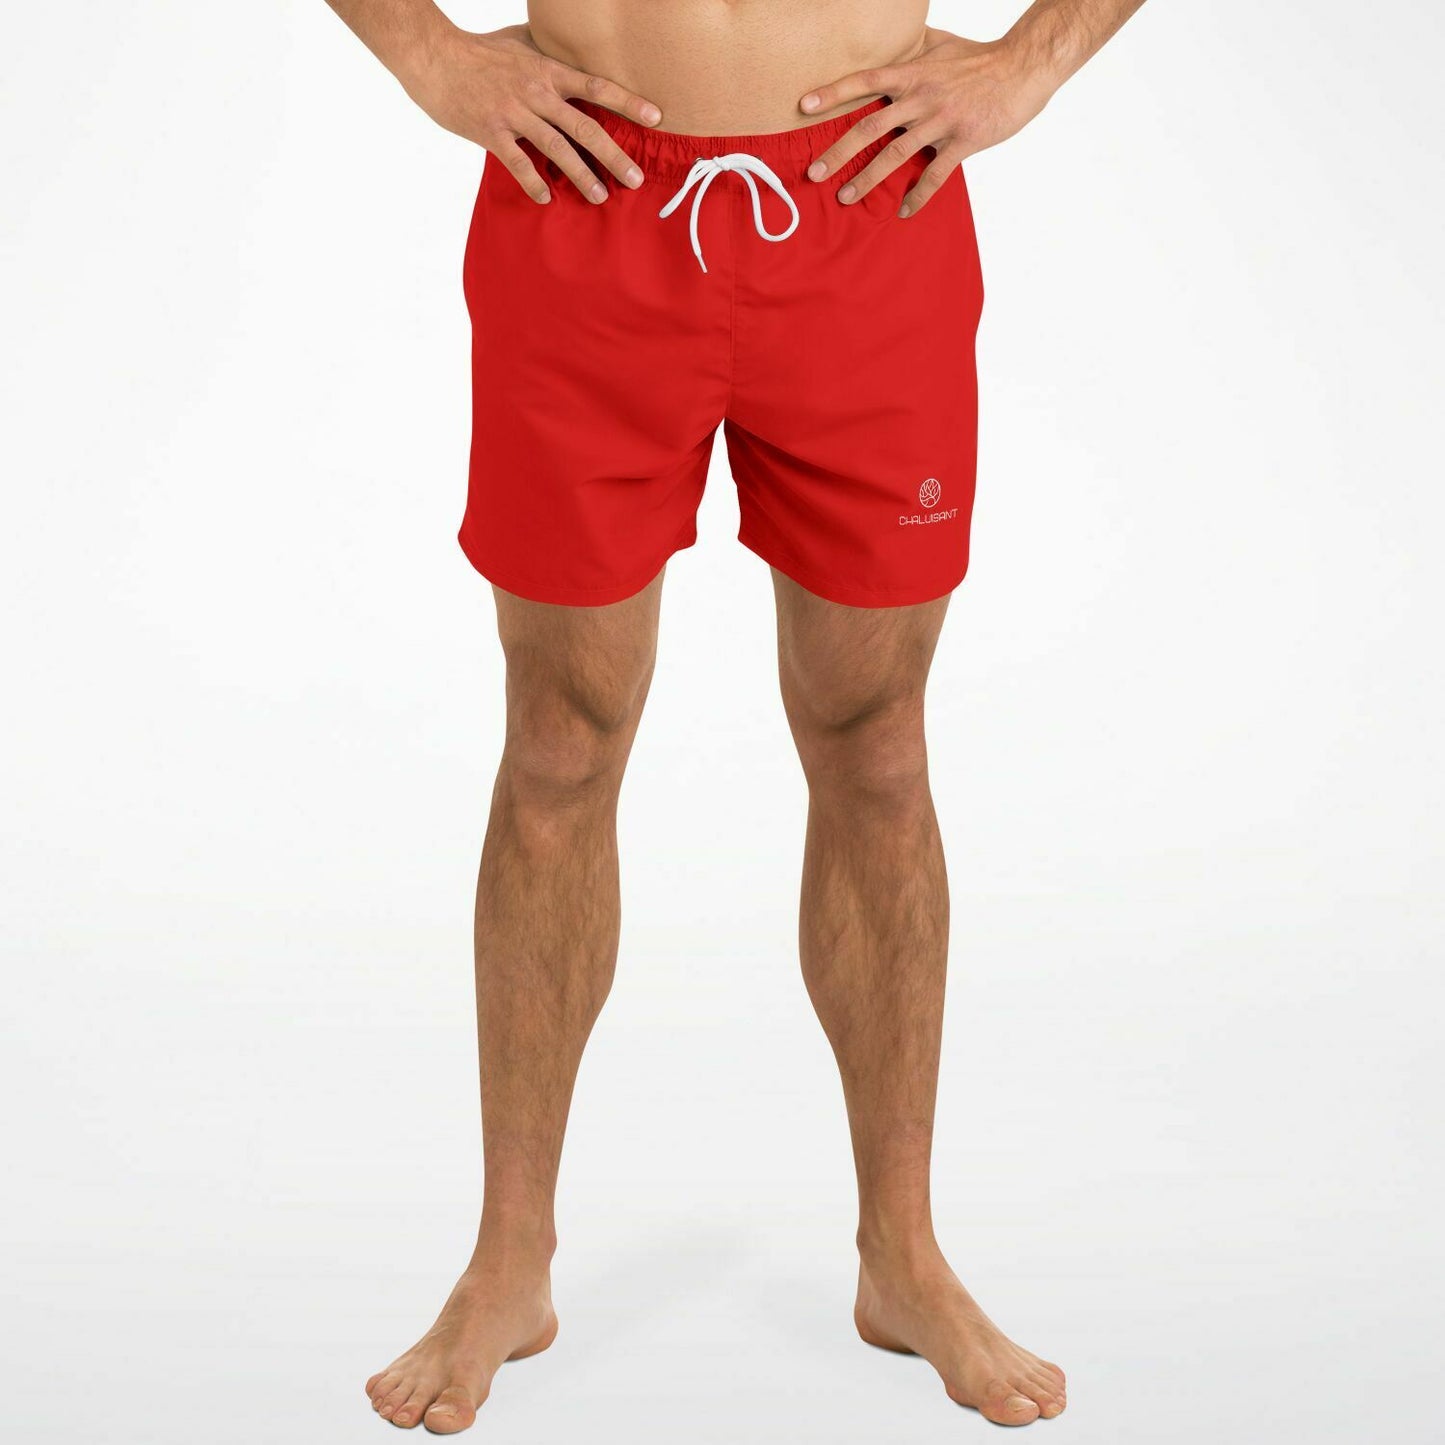 Fiery Red 5.5" Men Swim Shorts